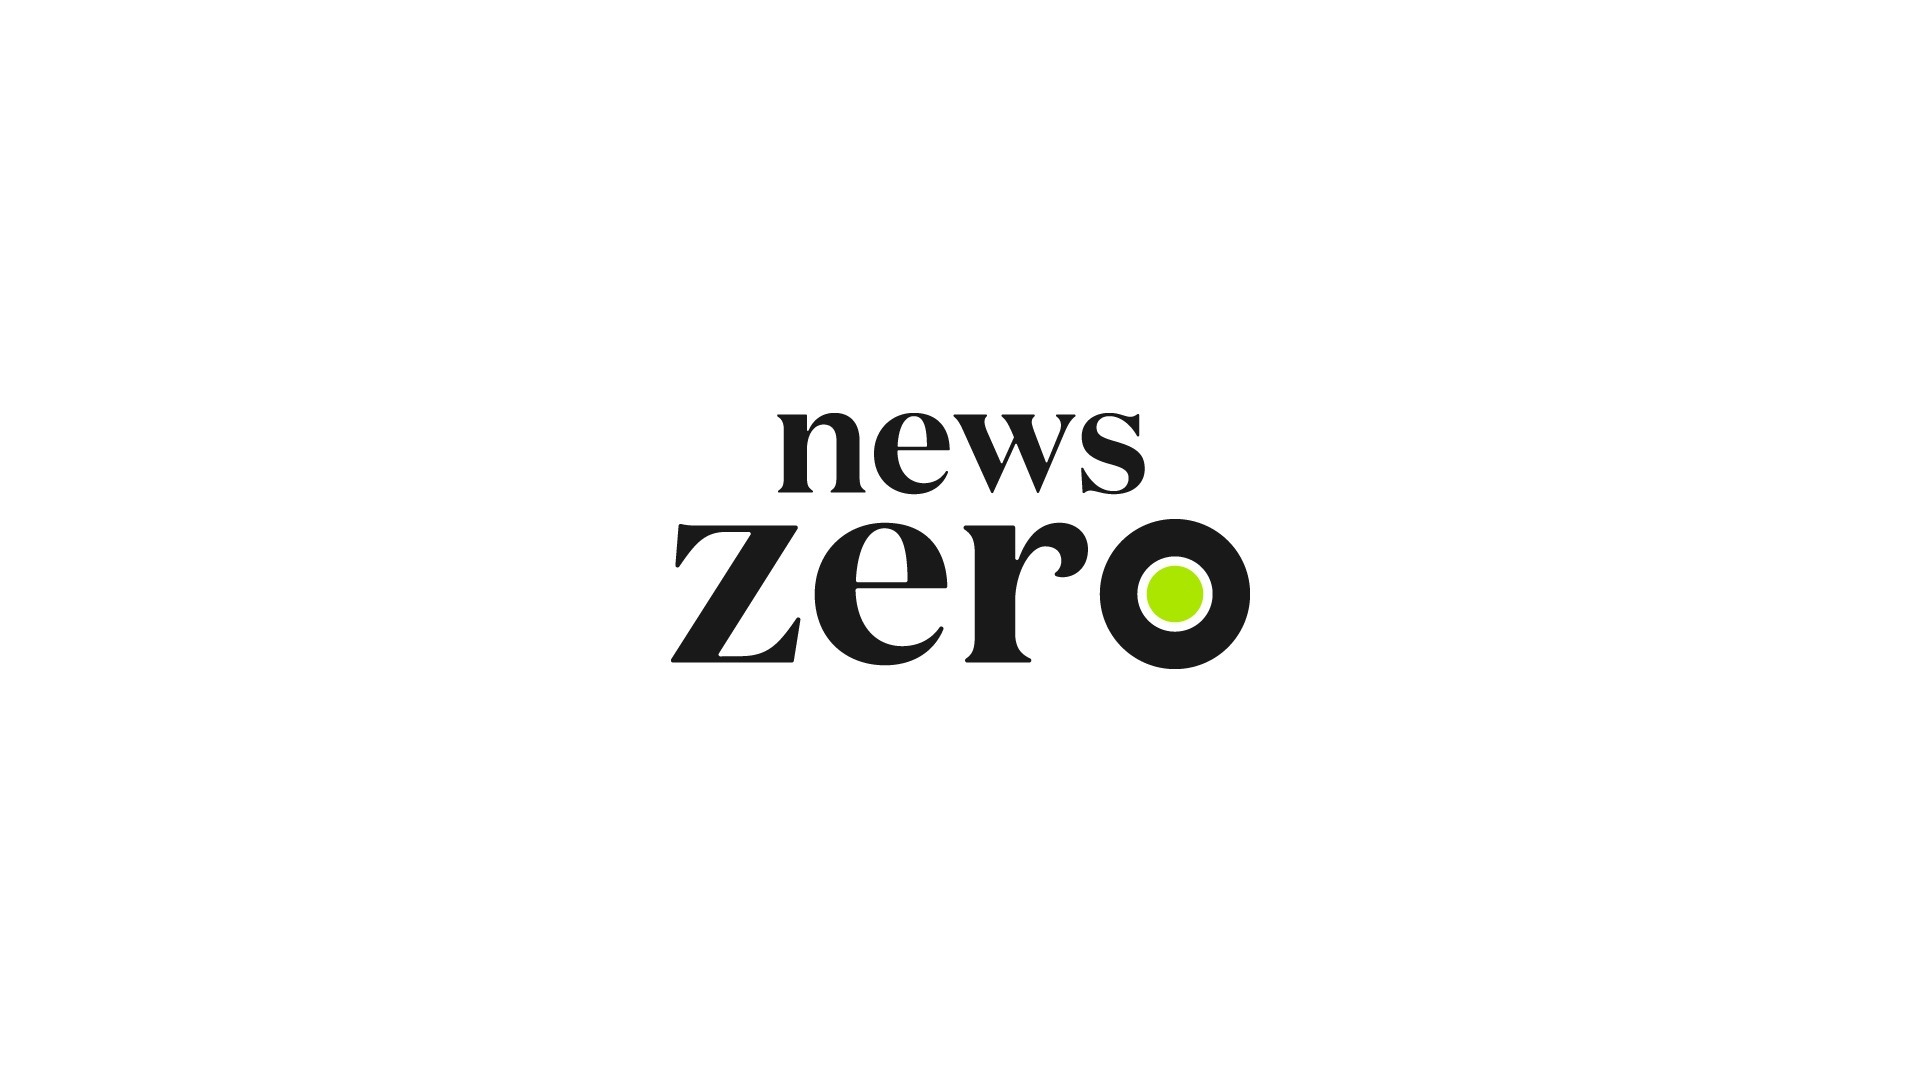 「news zero」ロゴ